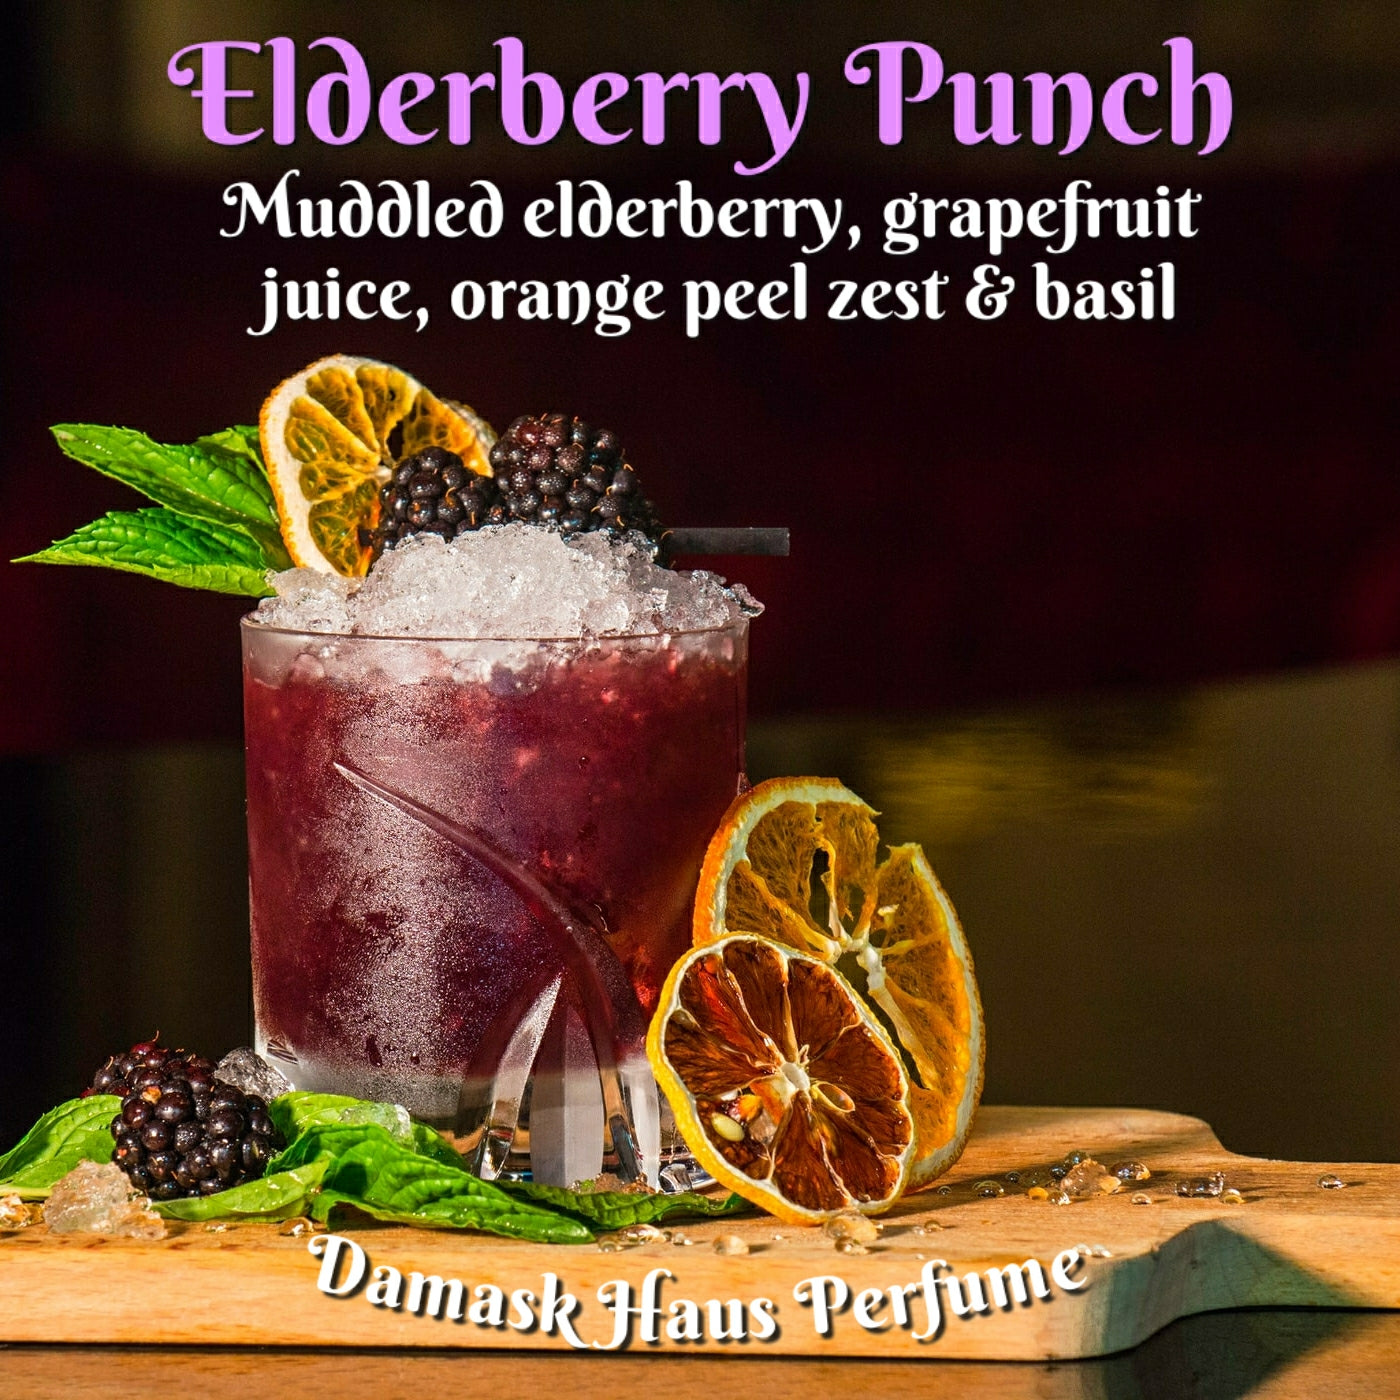 Elderberry Punch